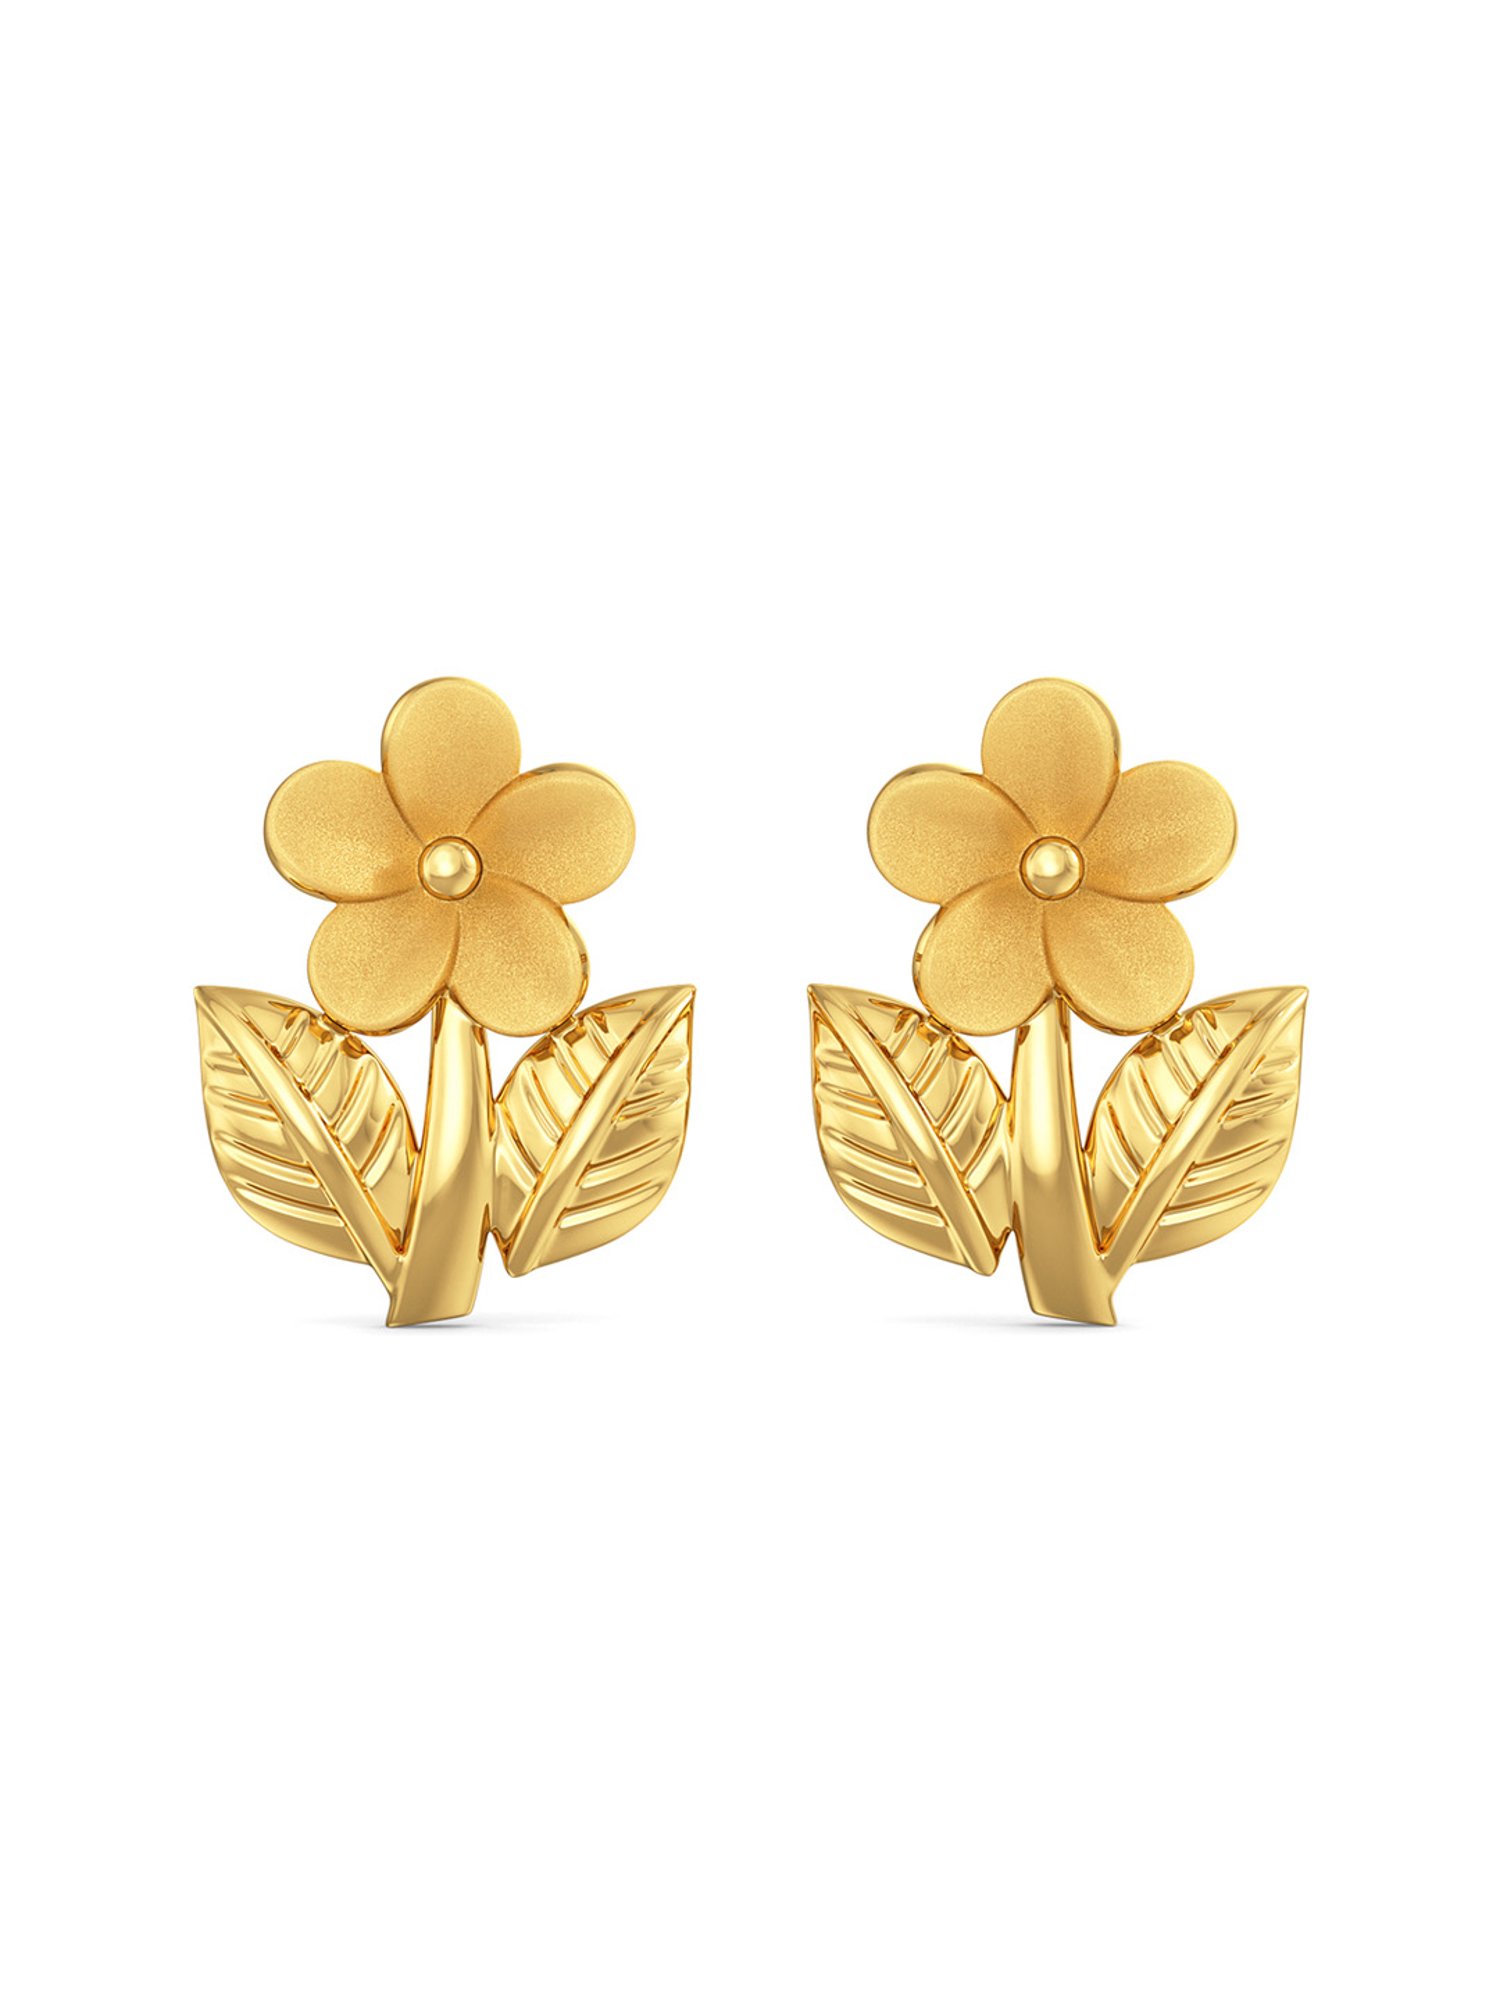 Buy Joyalukkas 22k Gold Earrings for Women Online At Best Price  Tata CLiQ